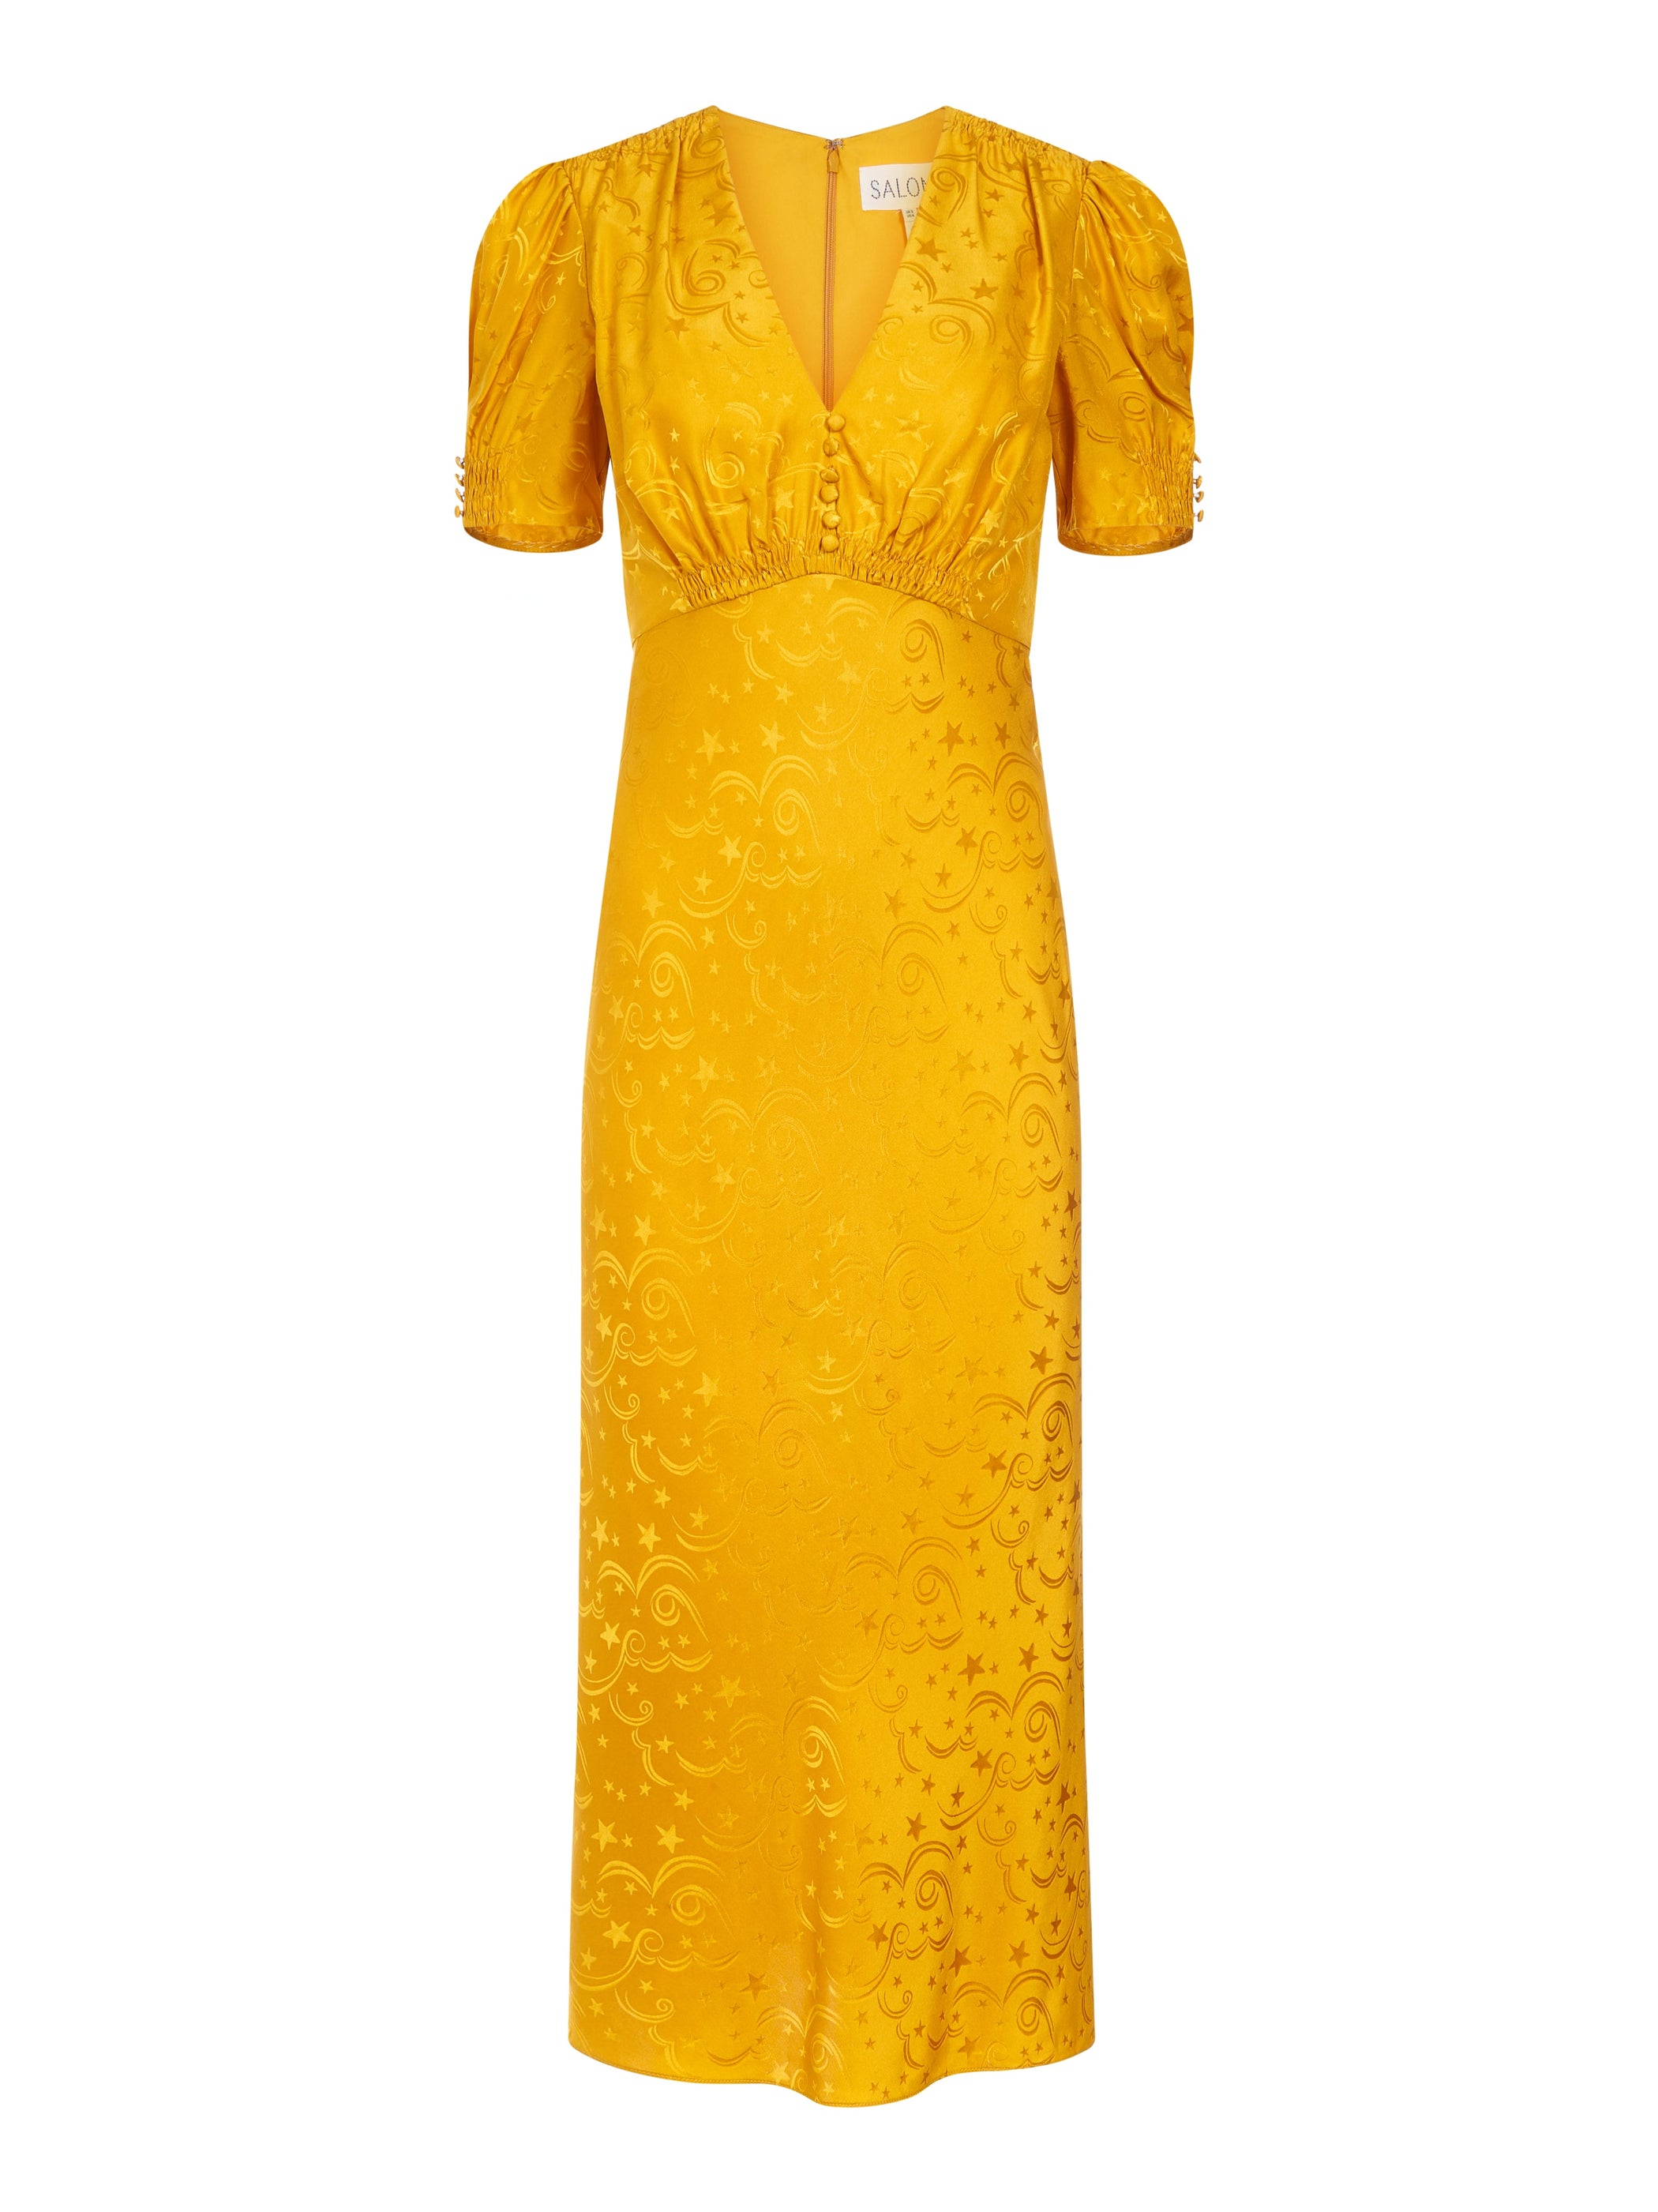 Venyx Lea B Dress in Golden Poppy